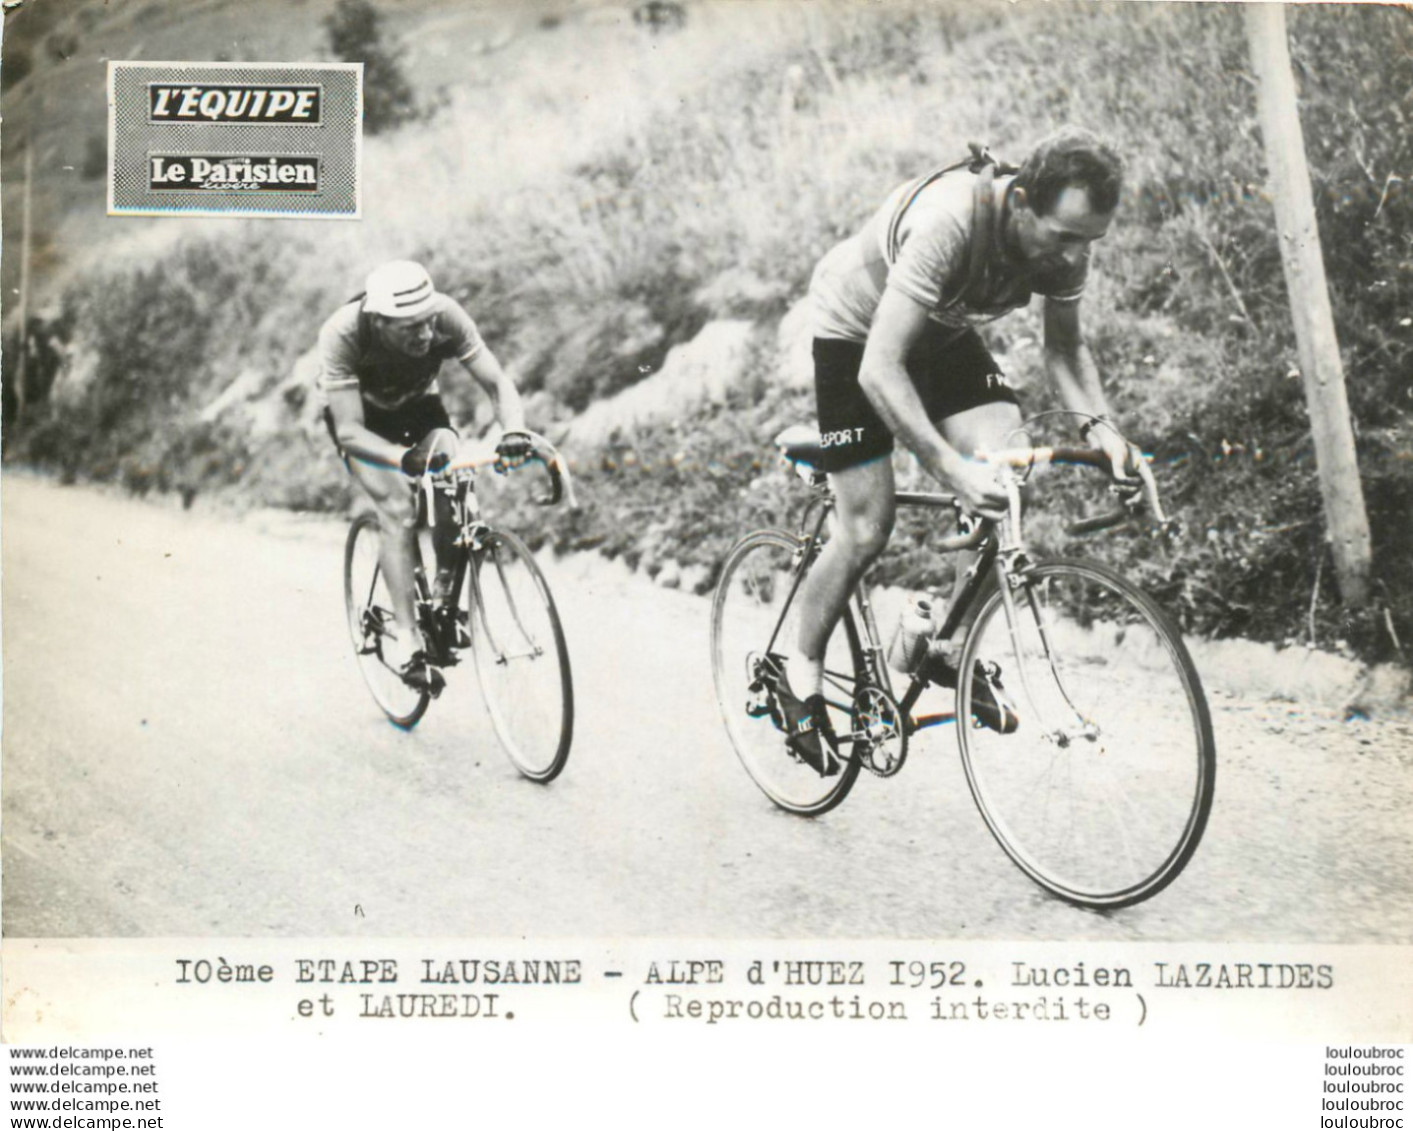 TOUR DE FRANCE 1952 LAZARIDES - LAUREDI  10ème ETAPE PHOTO DE PRESSE ORIGINALE ARGENTIQUE  20X15CM EQUIPE  LE PARISIEN - Deportes